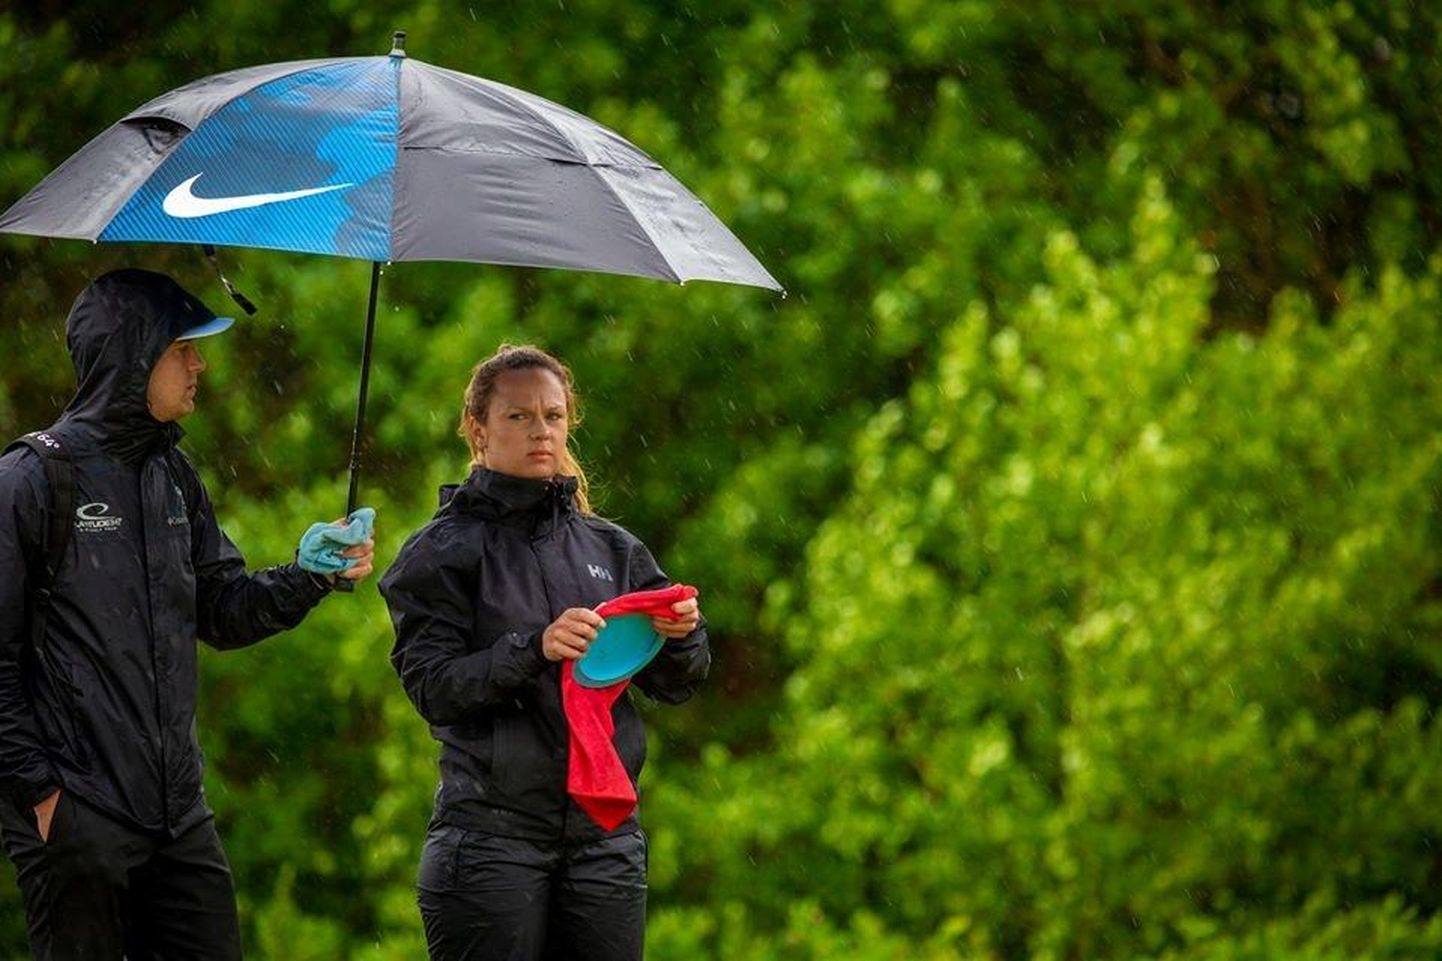 Silver Lätt ja Kristin Tattar pidid Soomes võistlema vihmasajuski.